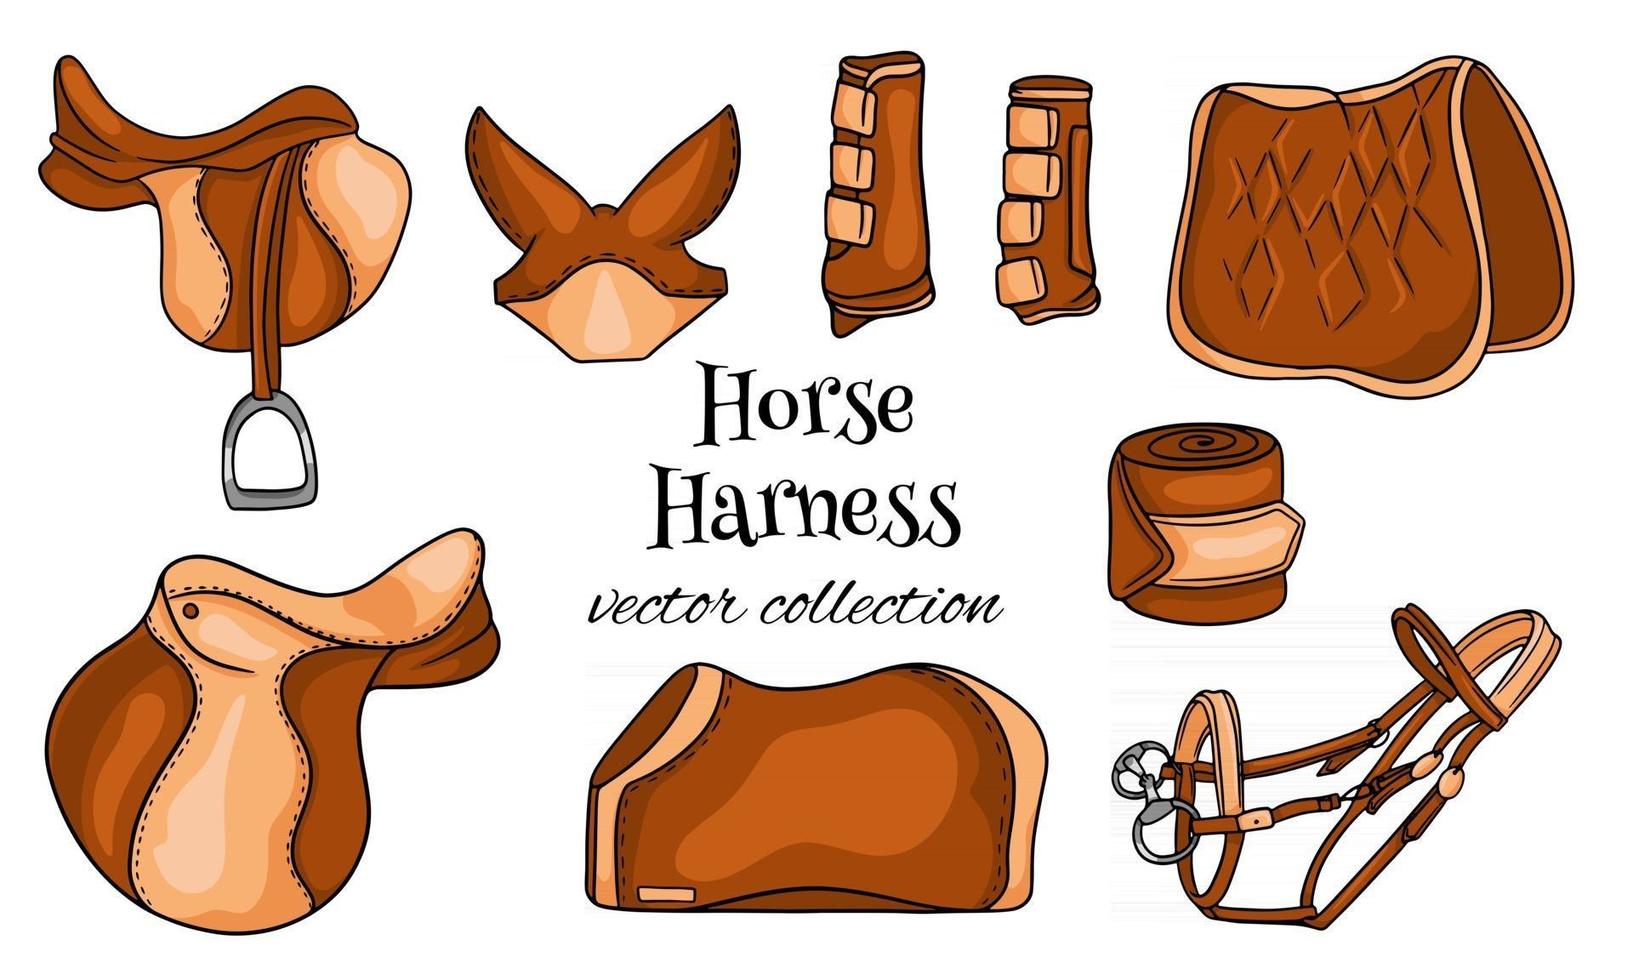 arnés para caballos un conjunto de equipos ecuestres silla de montar brida manta botas protectoras en estilo de dibujos animados vector